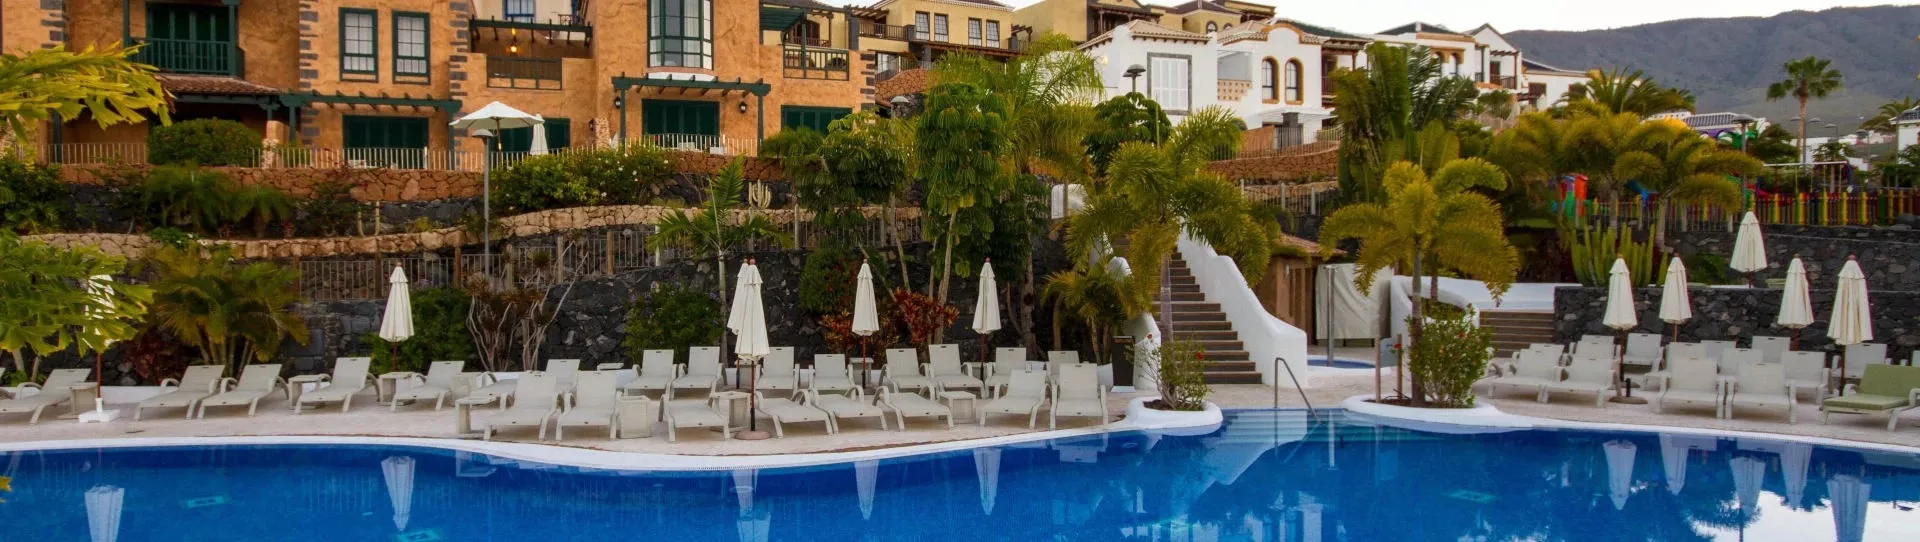 Spain golf holidays - Hotel Suite Villa María - Photo 1